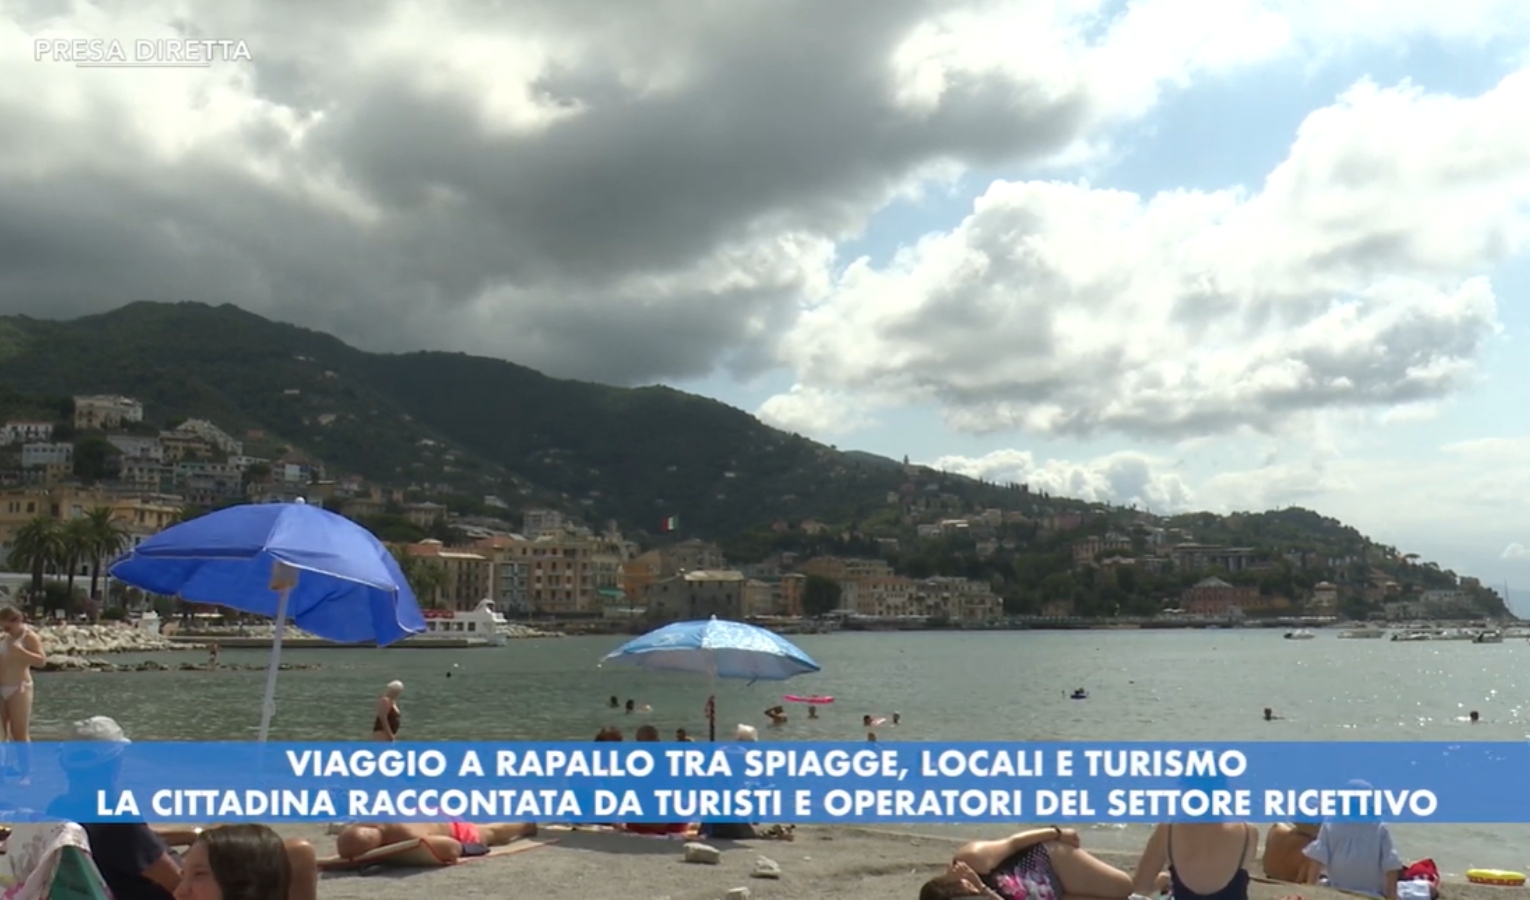 Viaggio a Rapallo tra spiagge, turismo e locali